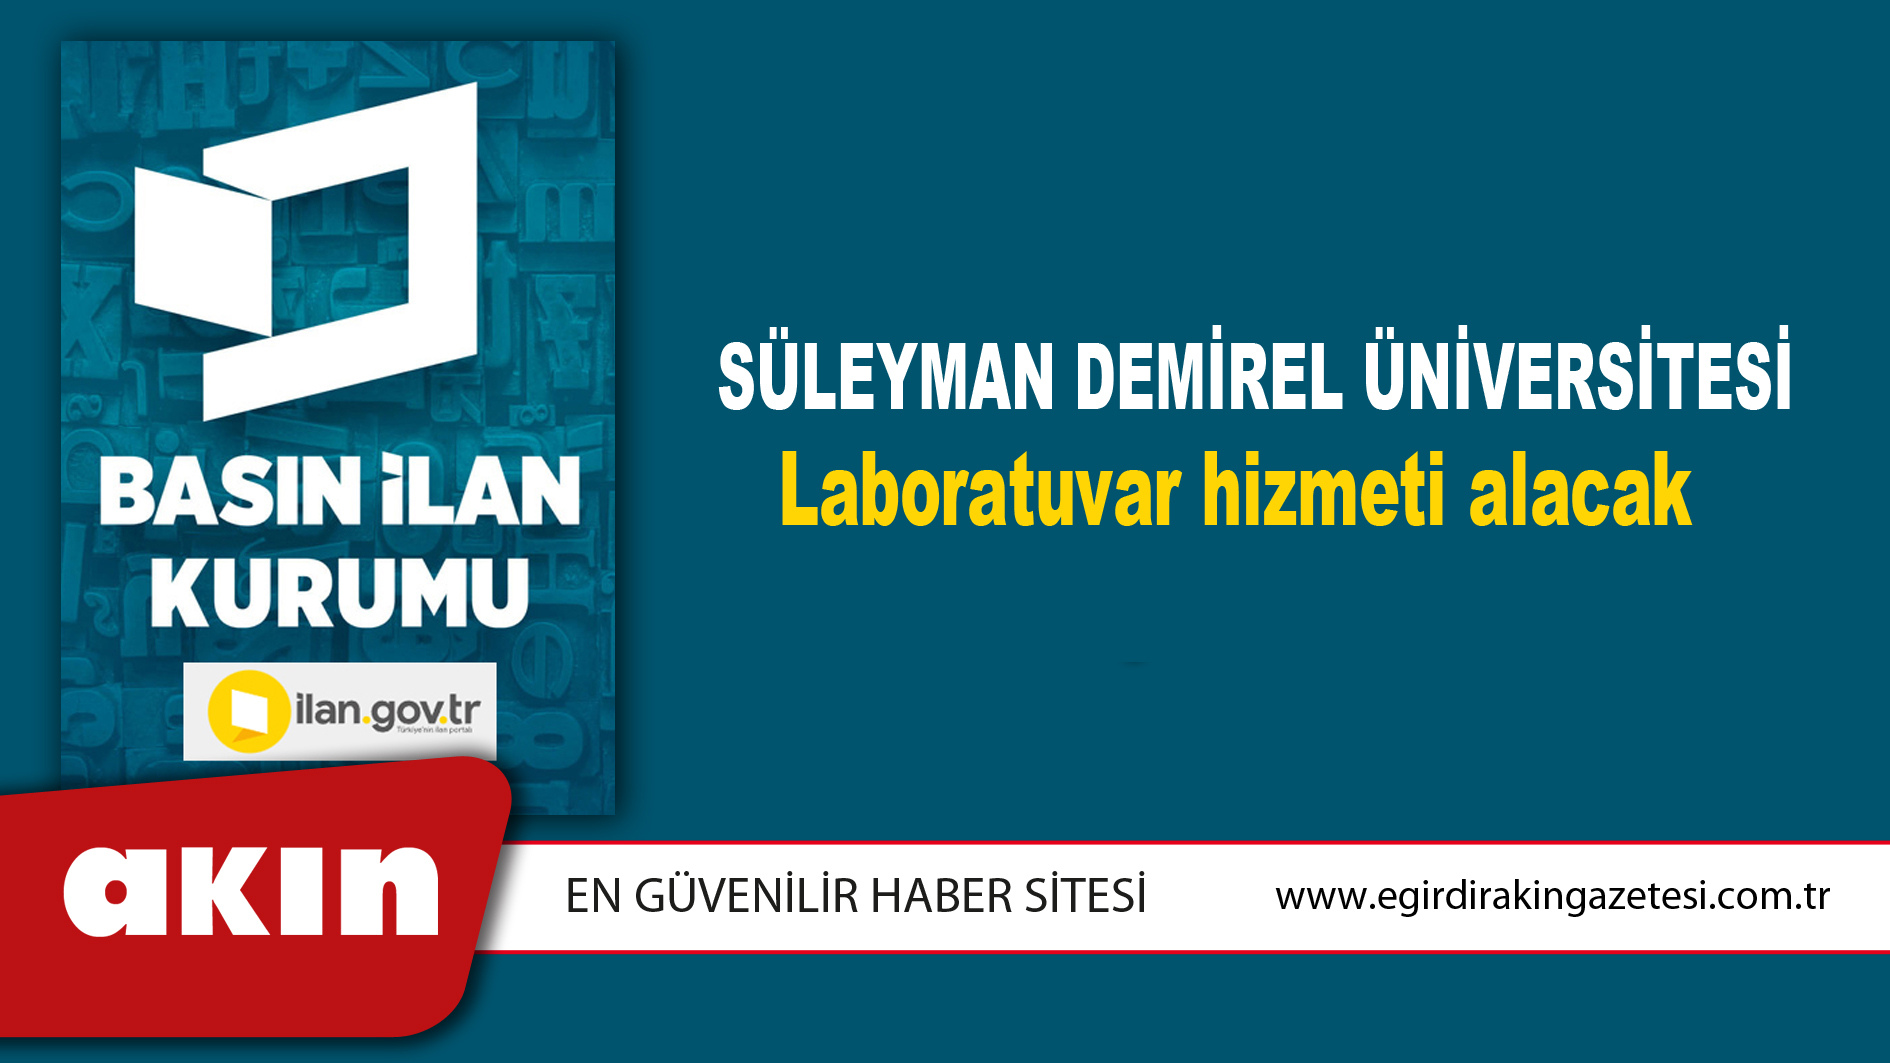 Süleyman Demirel Üniversitesi Laboratuvar hizmeti alacak